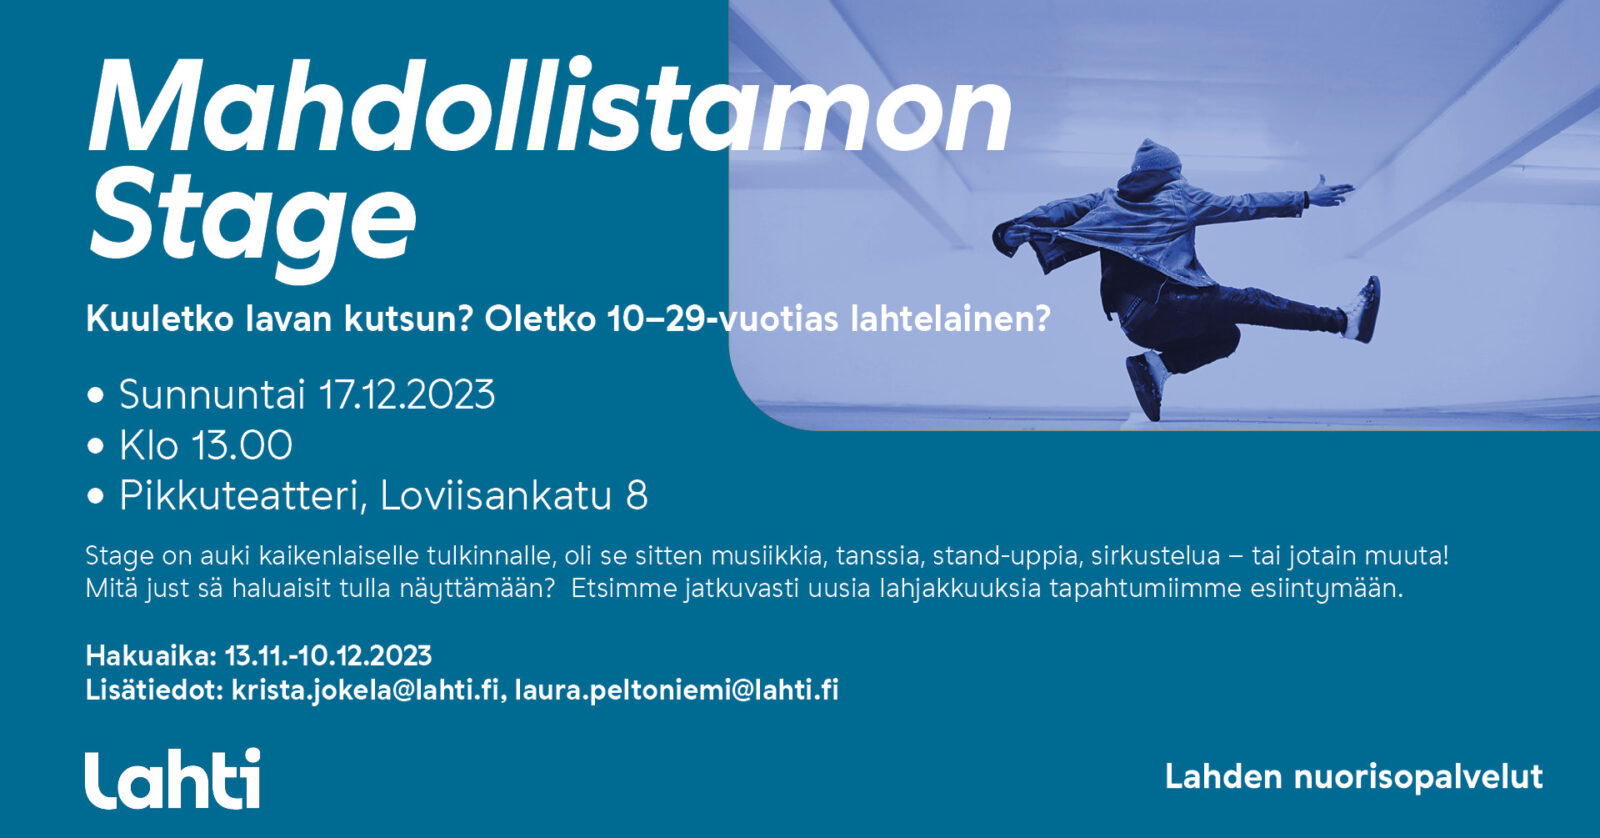 Lisätiedot: krista.jokela@lahti.fi, laura.peltoniemi@lahti.fi